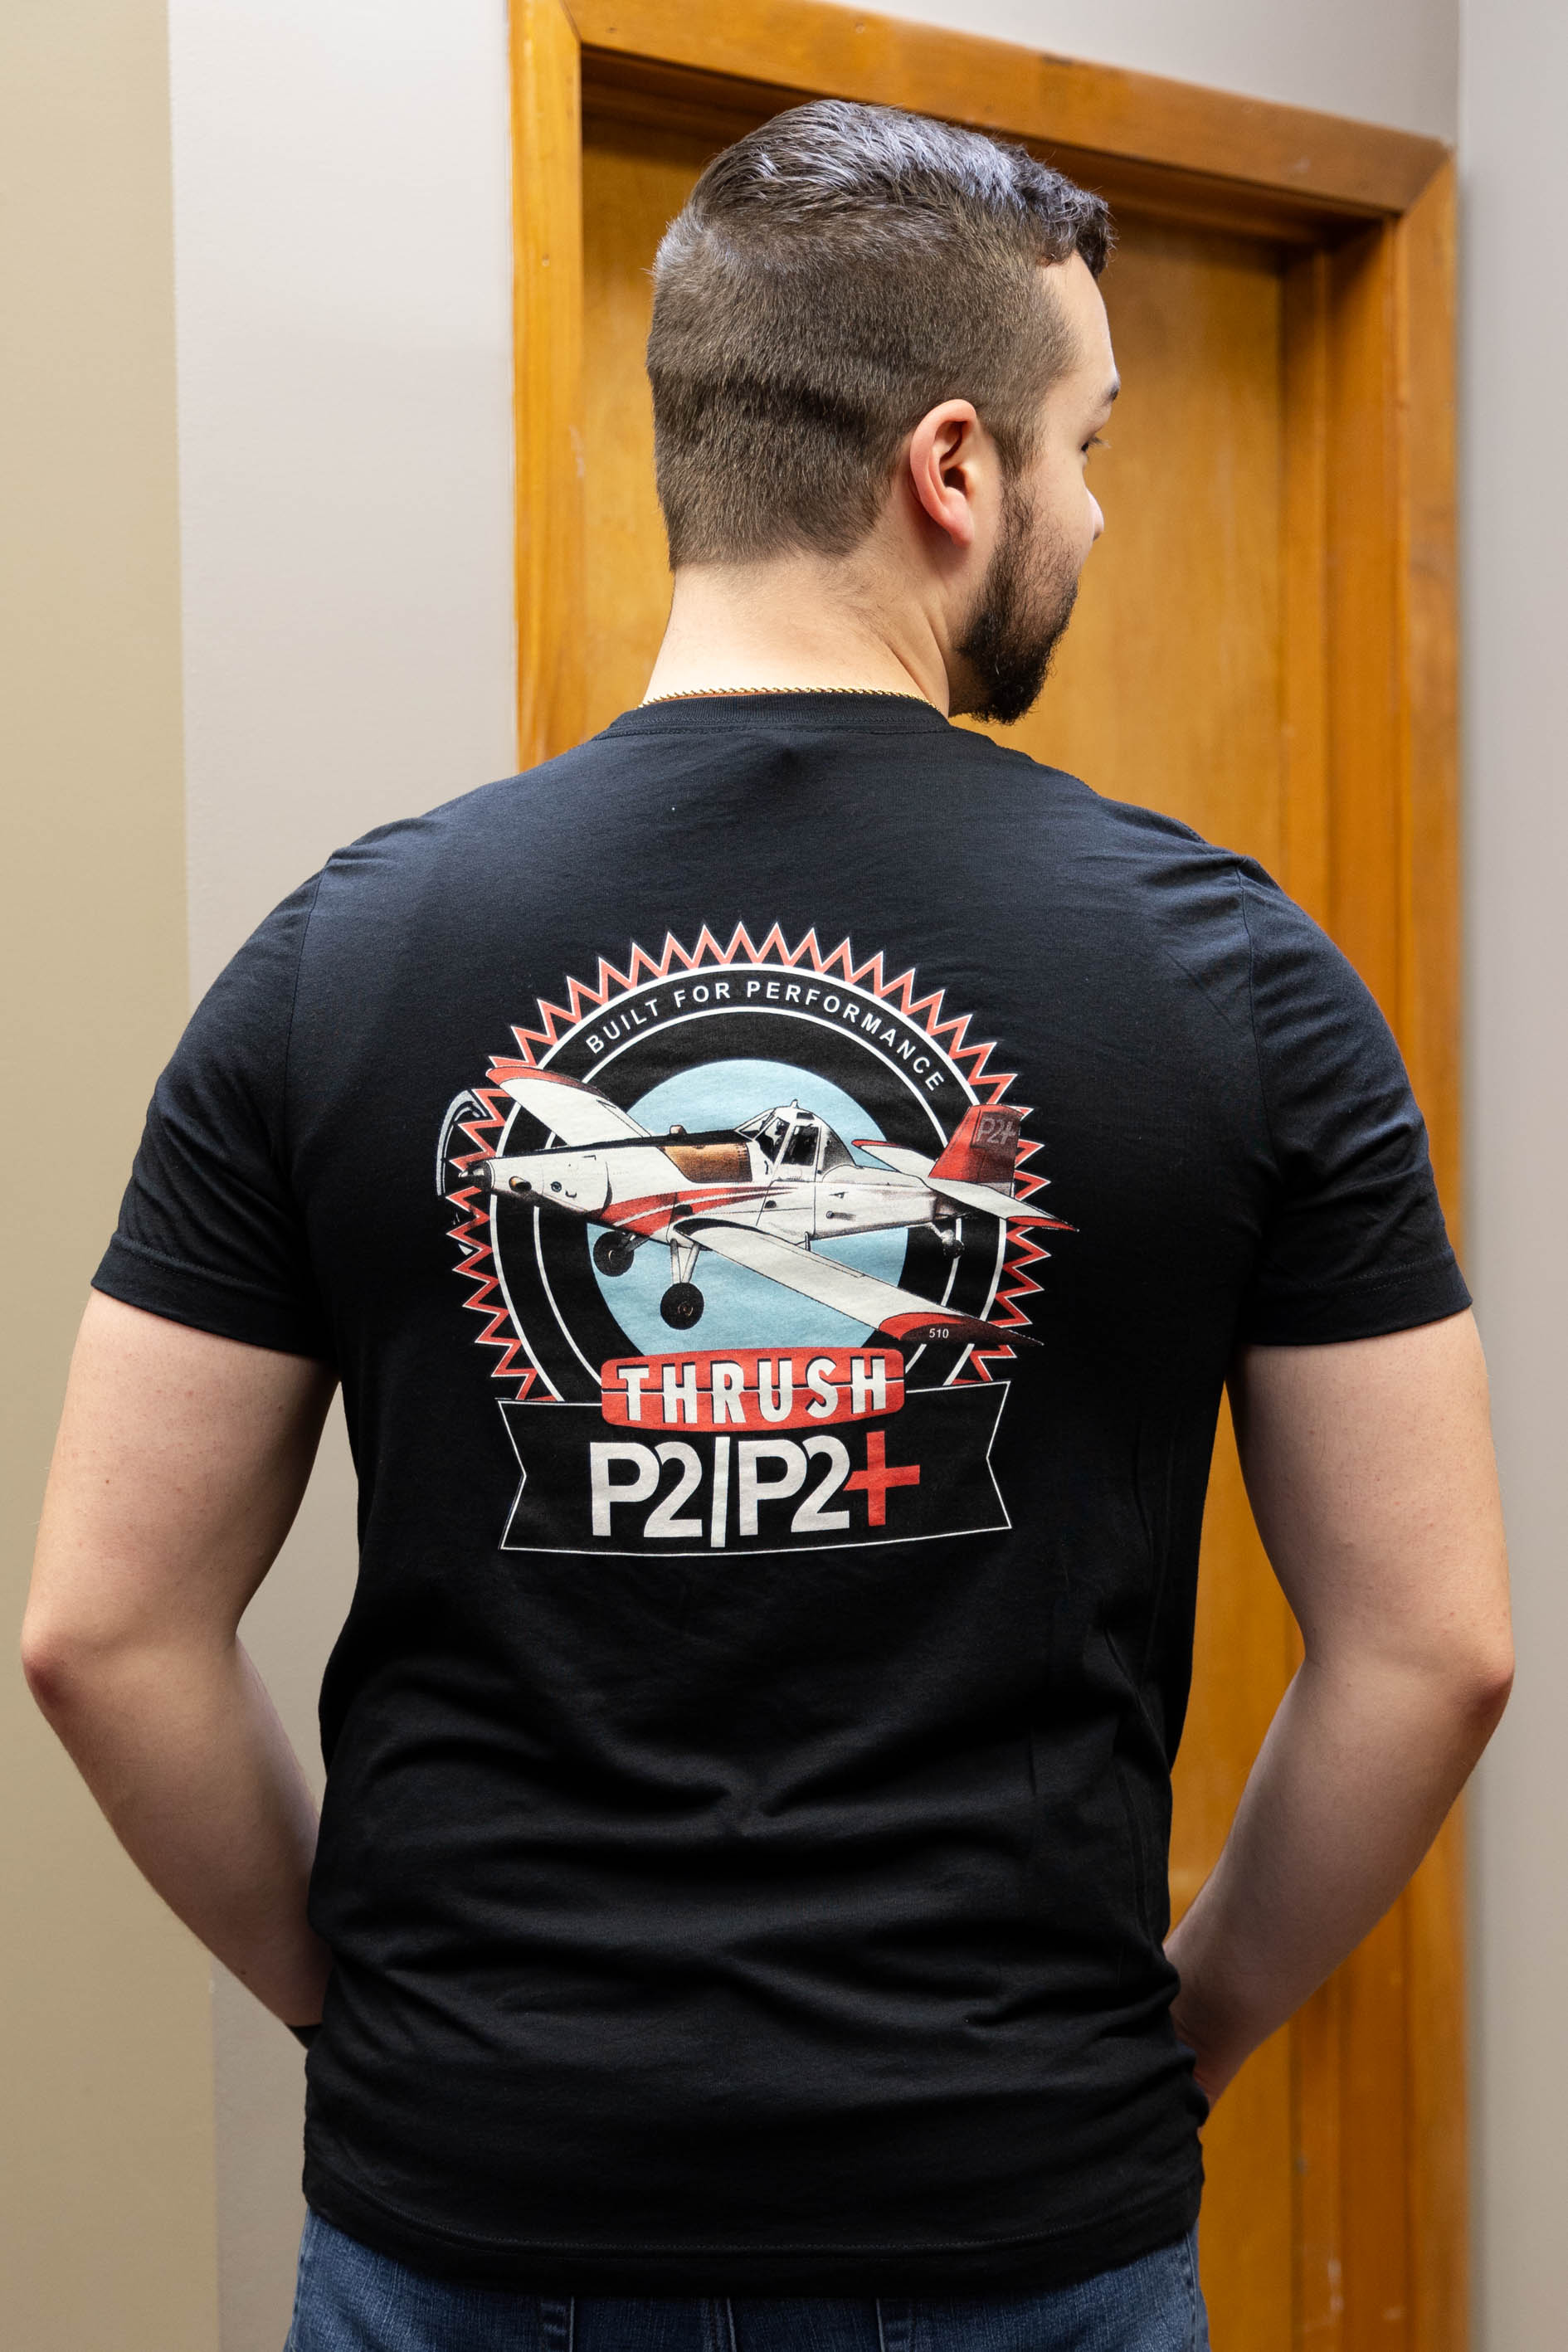 P2/P2+ T-Shirt